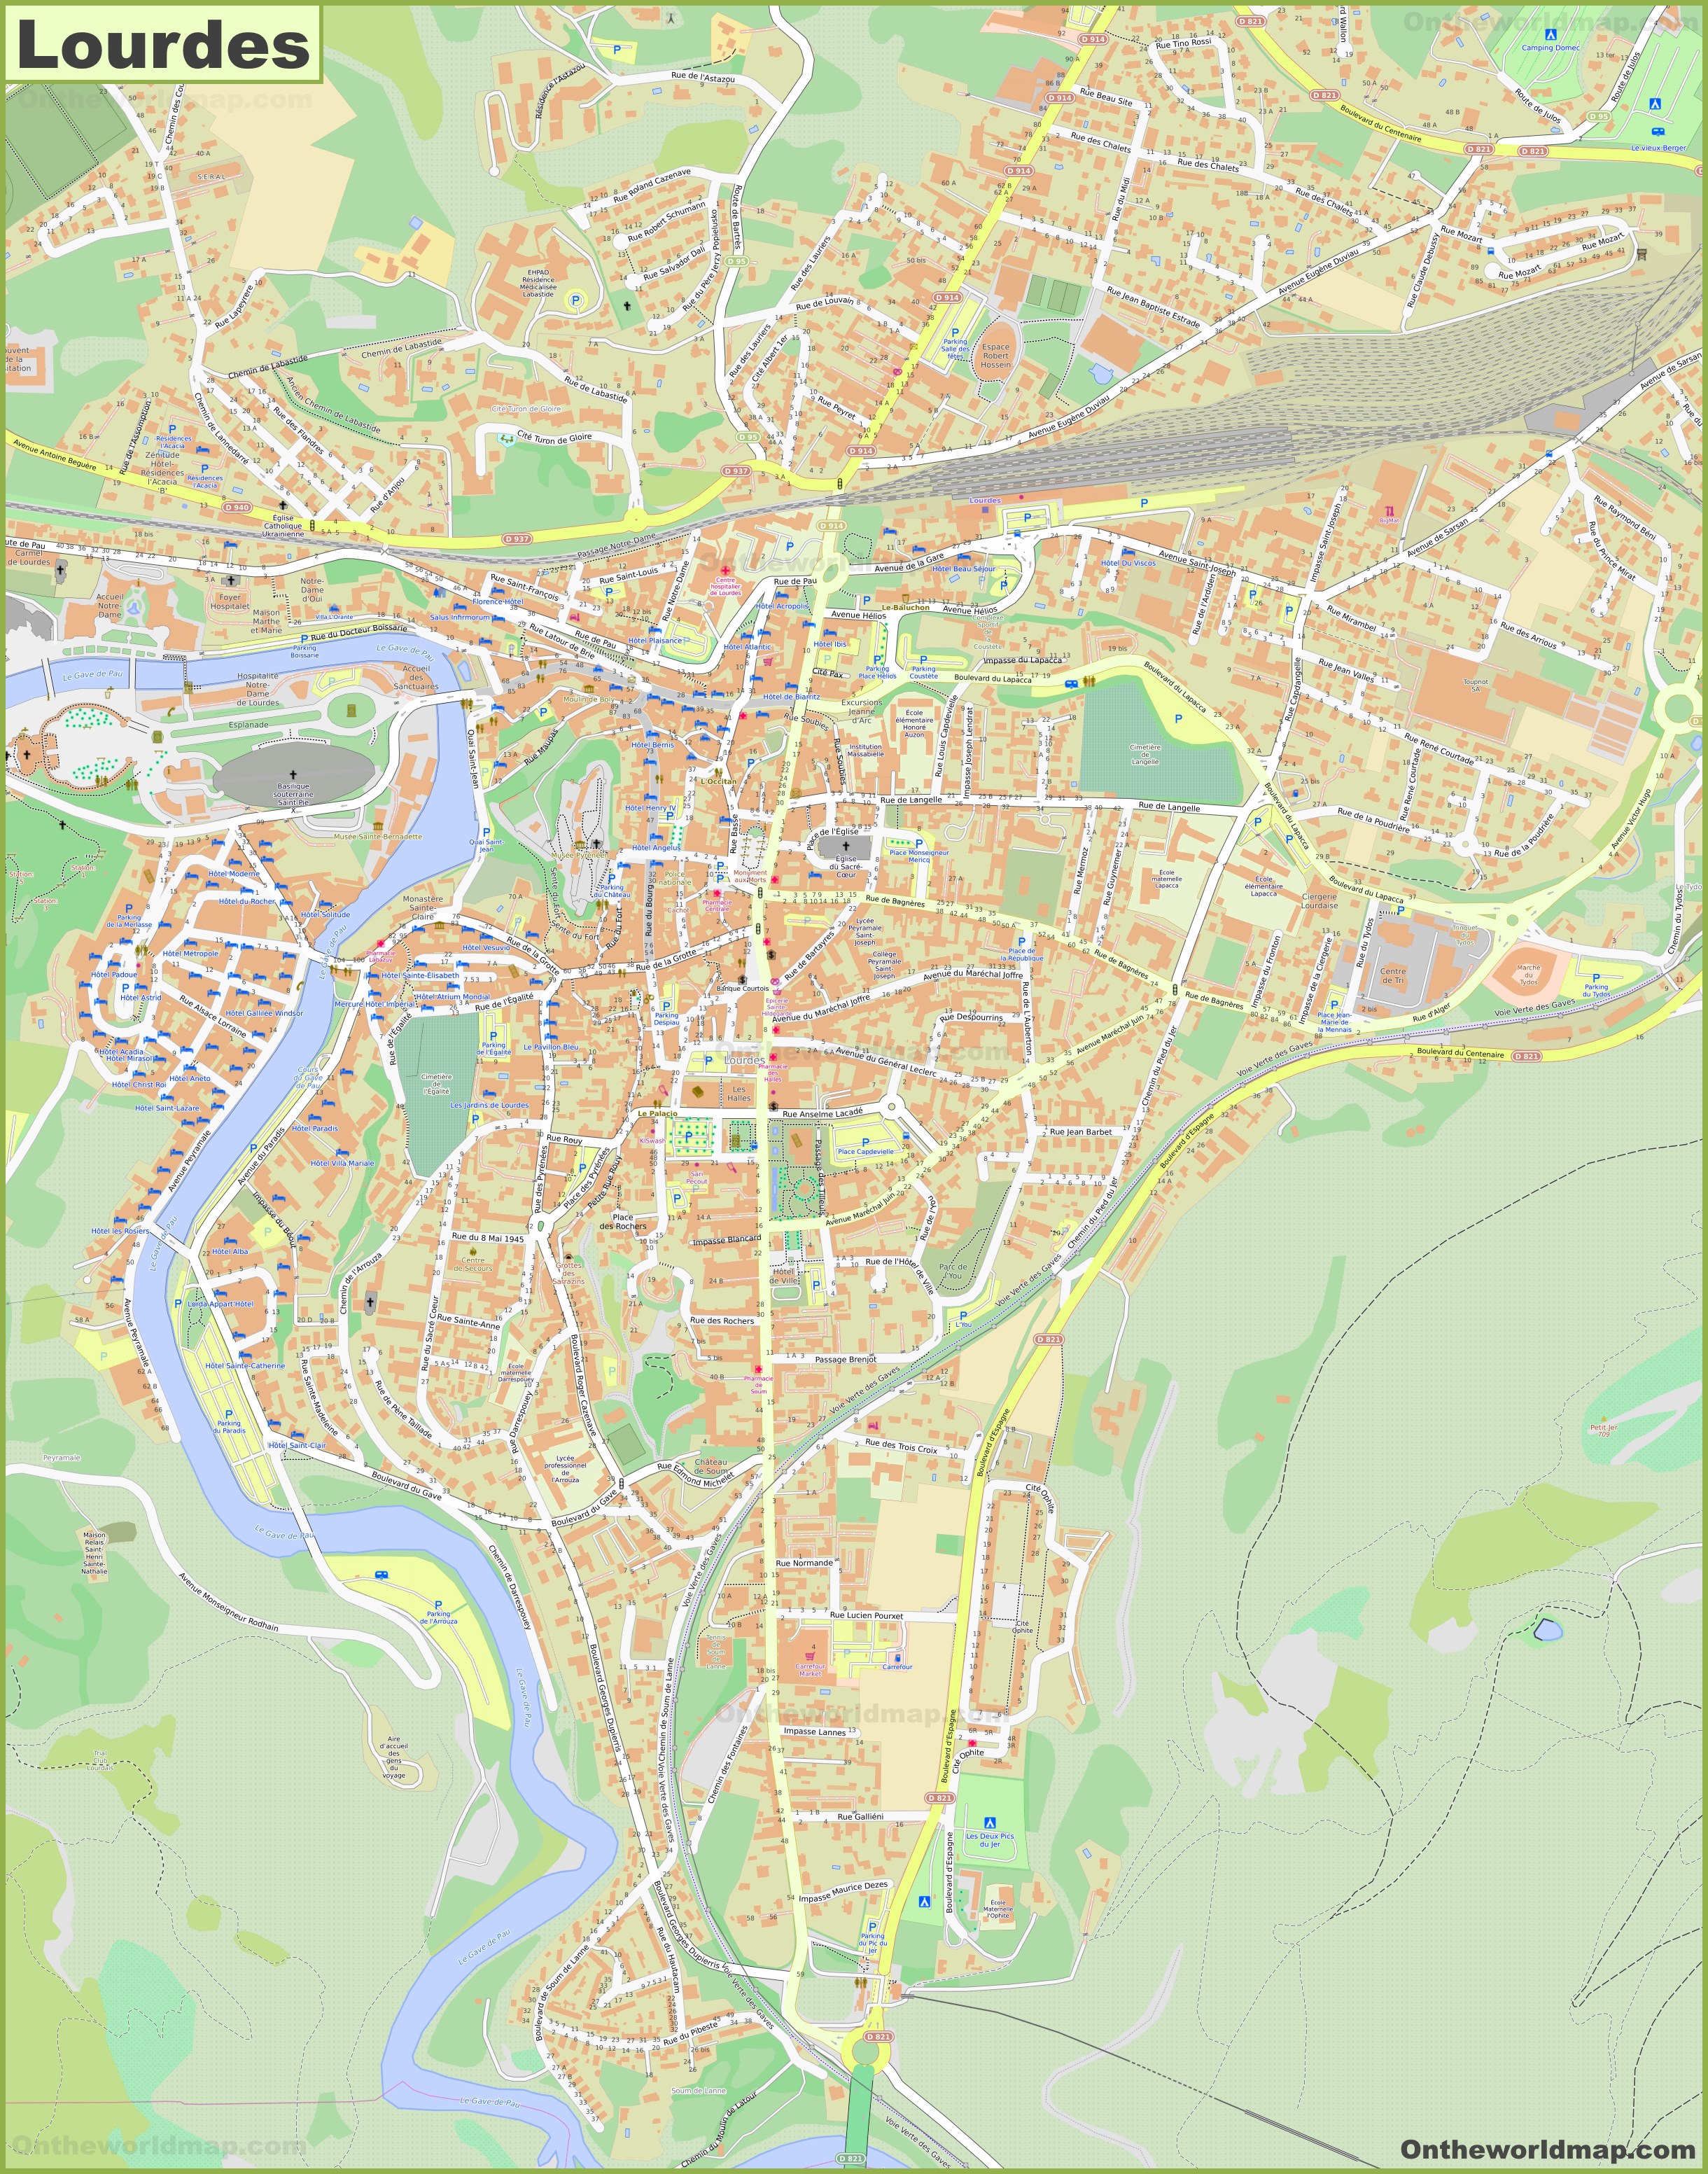 Detailed Map of Lourdes - Ontheworldmap.com